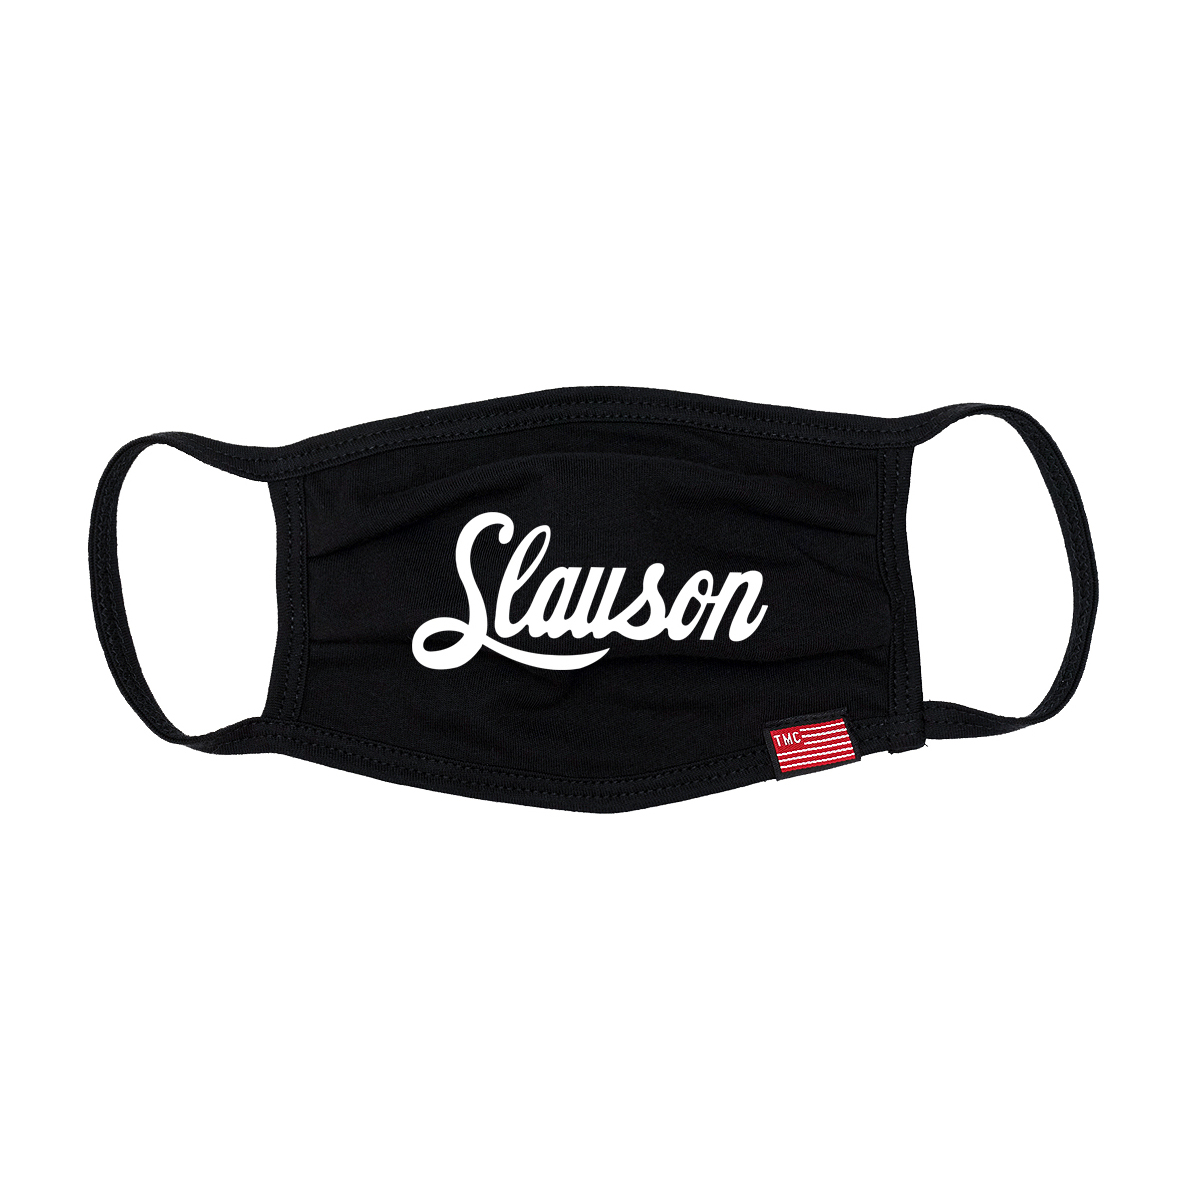 Slauson Face Mask - Black-The Marathon Clothing